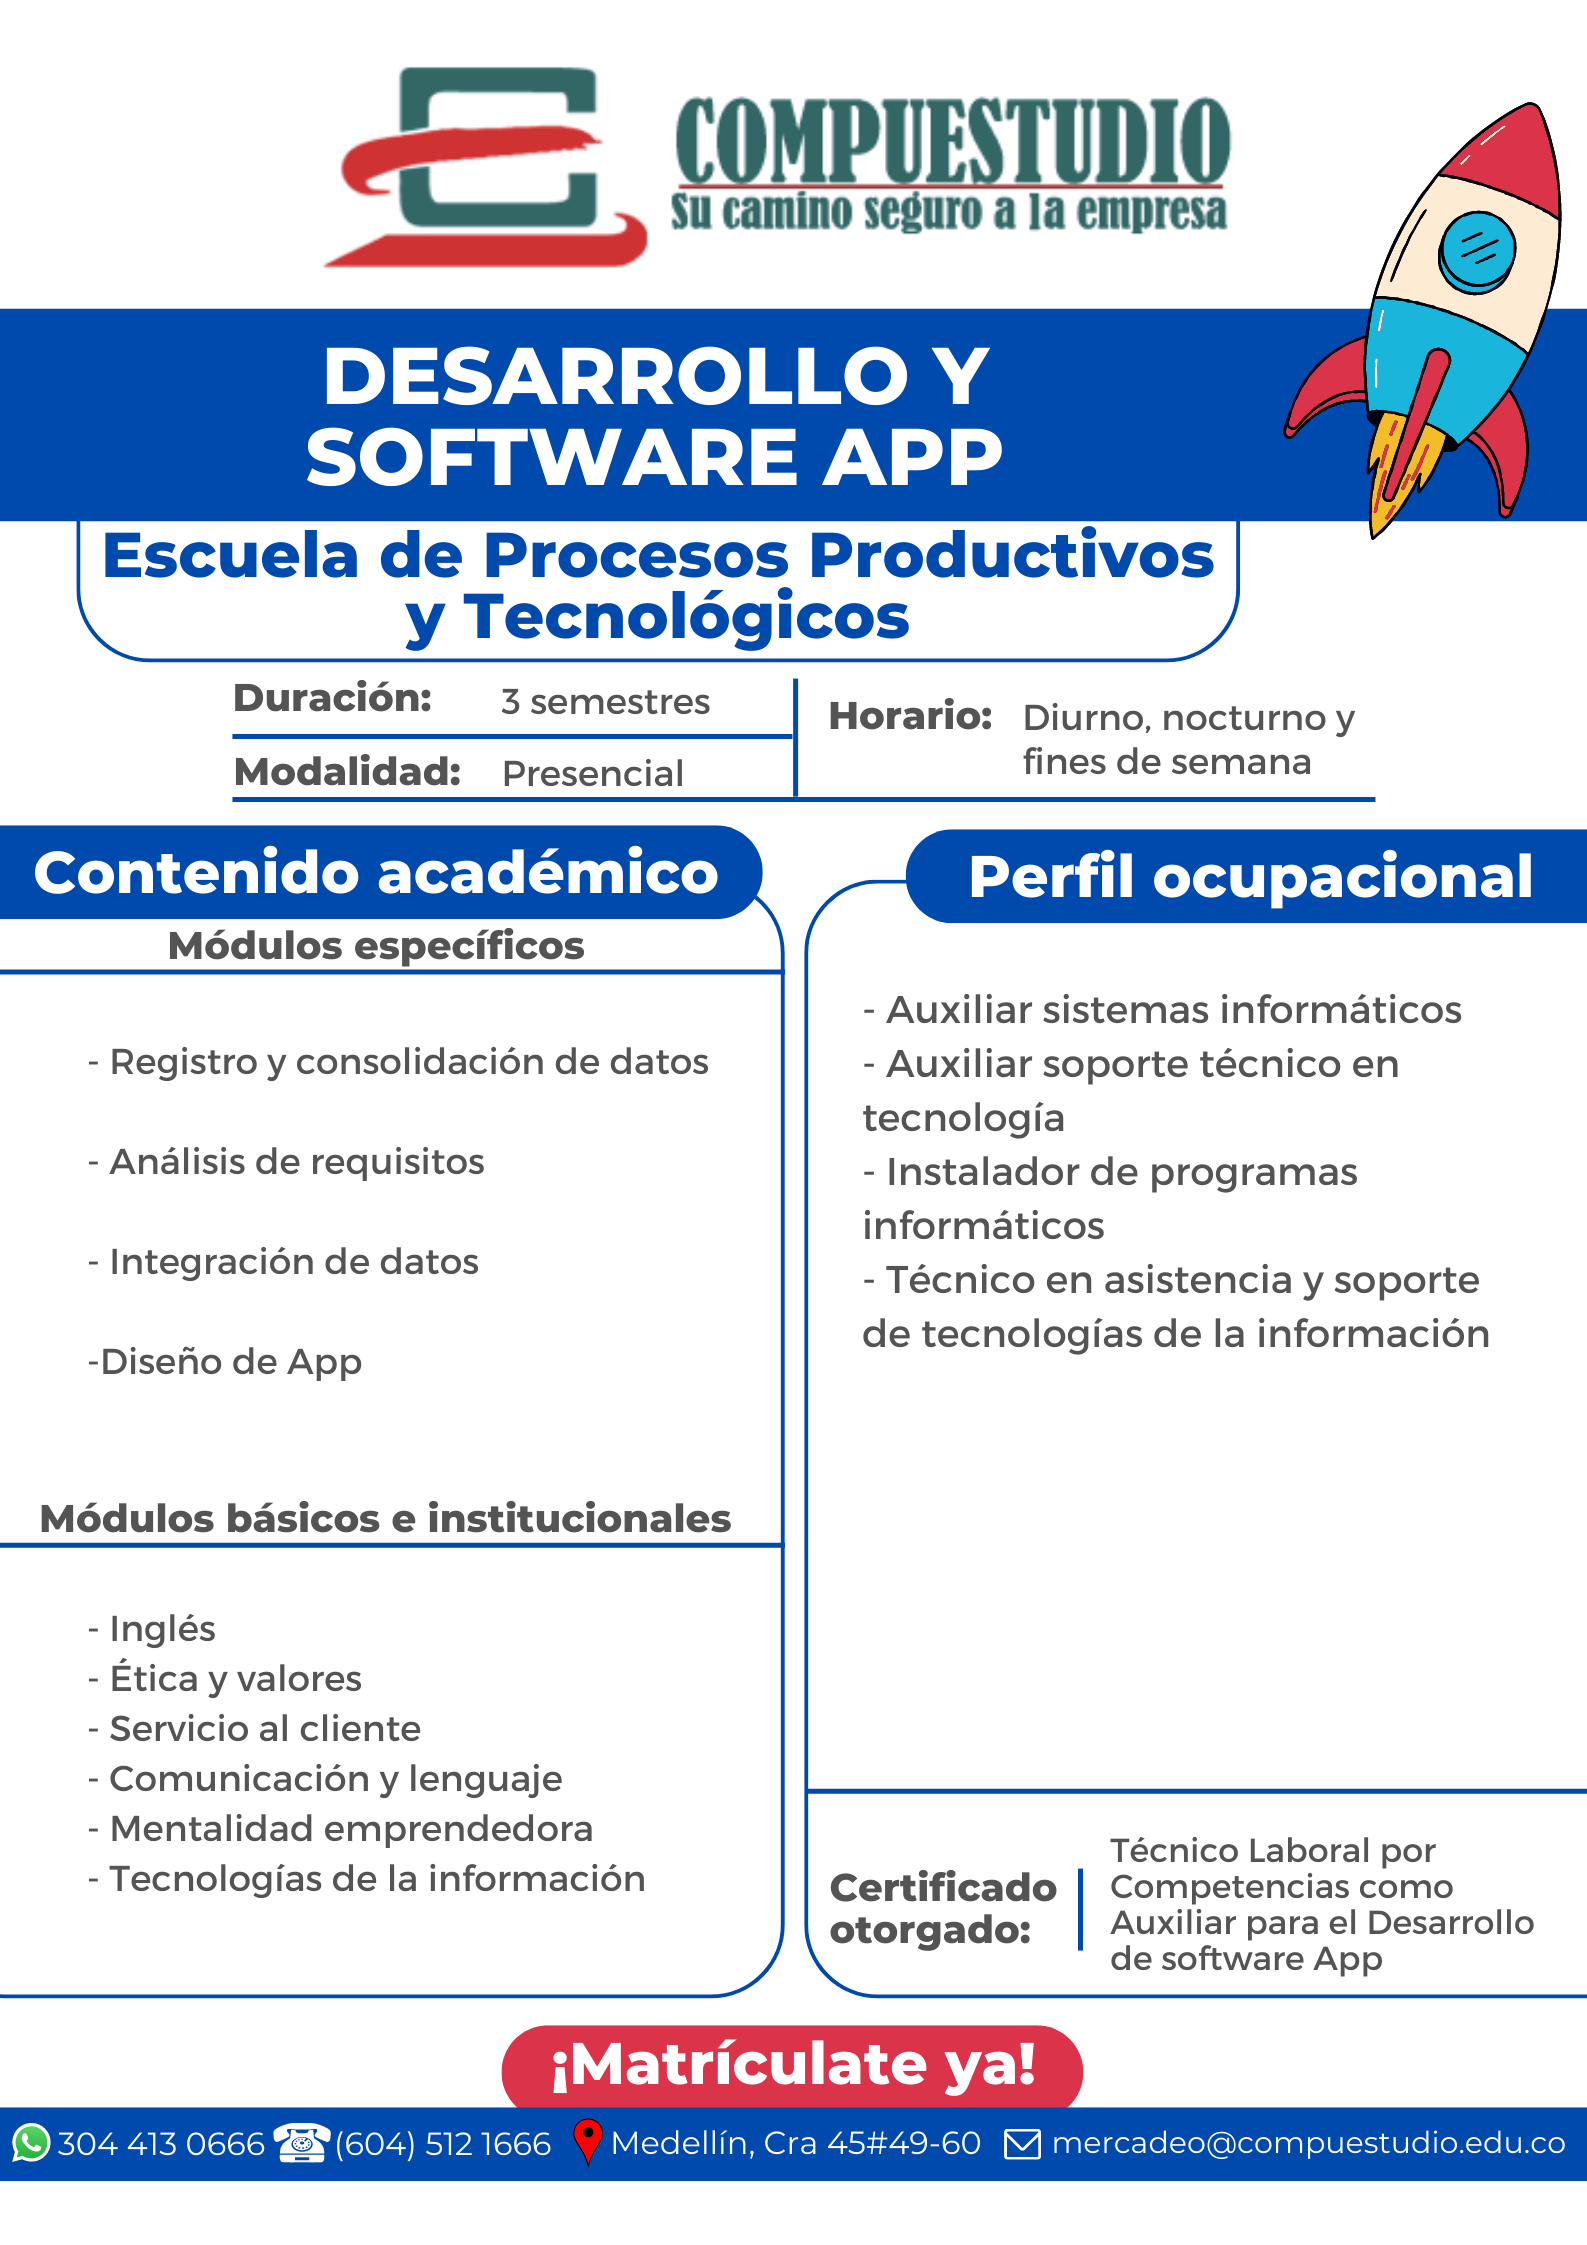 Técnico para el Desarrollo de Software y APP Medellín Compuestudio